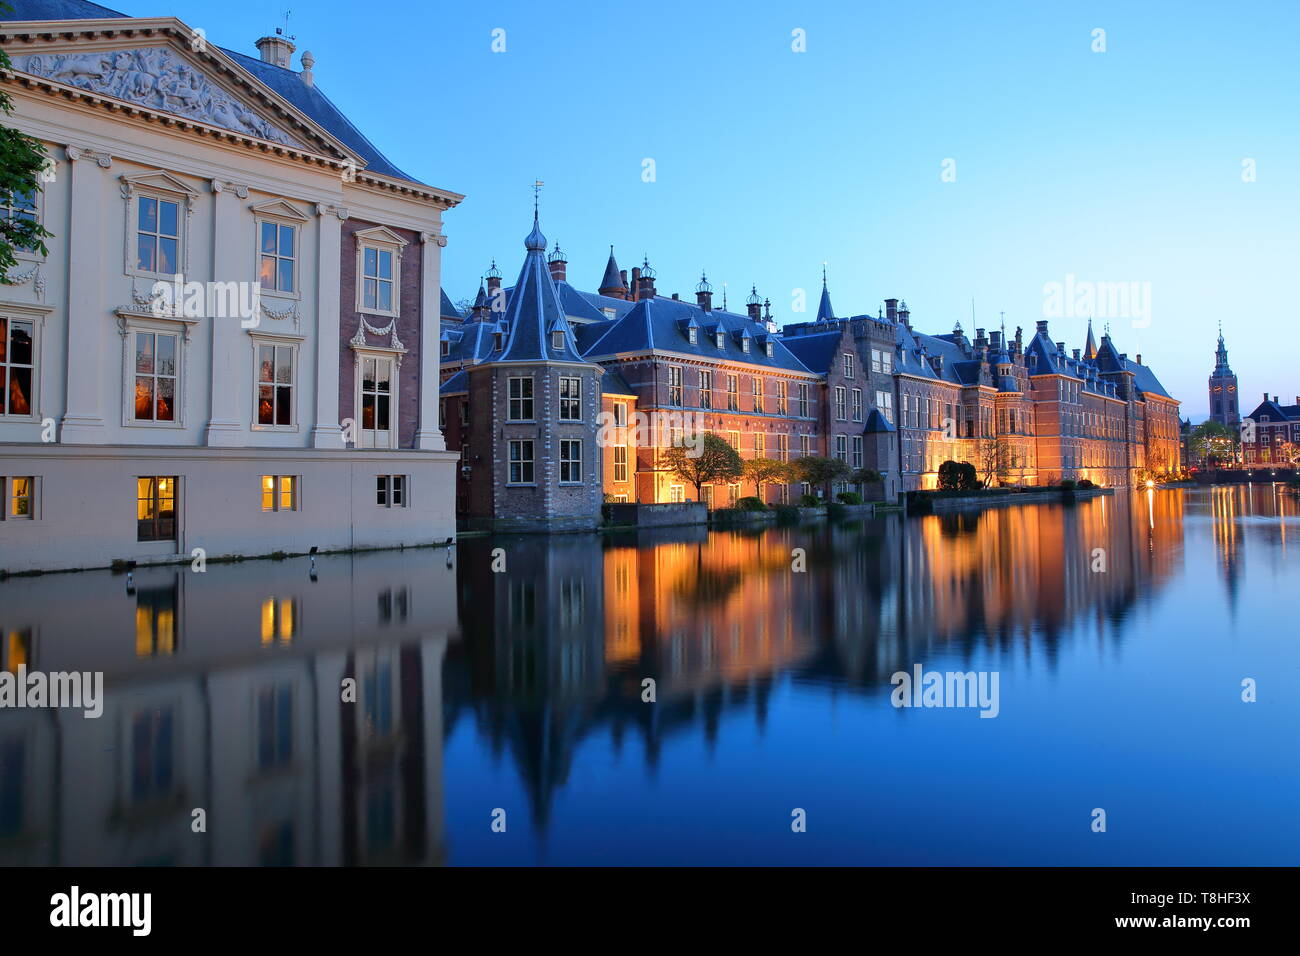 Reflets de la Mauritshuis et le Binnenhof sur le Hofvijver lake, avec la tour de Grote of Sint Jacobskerk, La Haye, Pays-Bas Banque D'Images